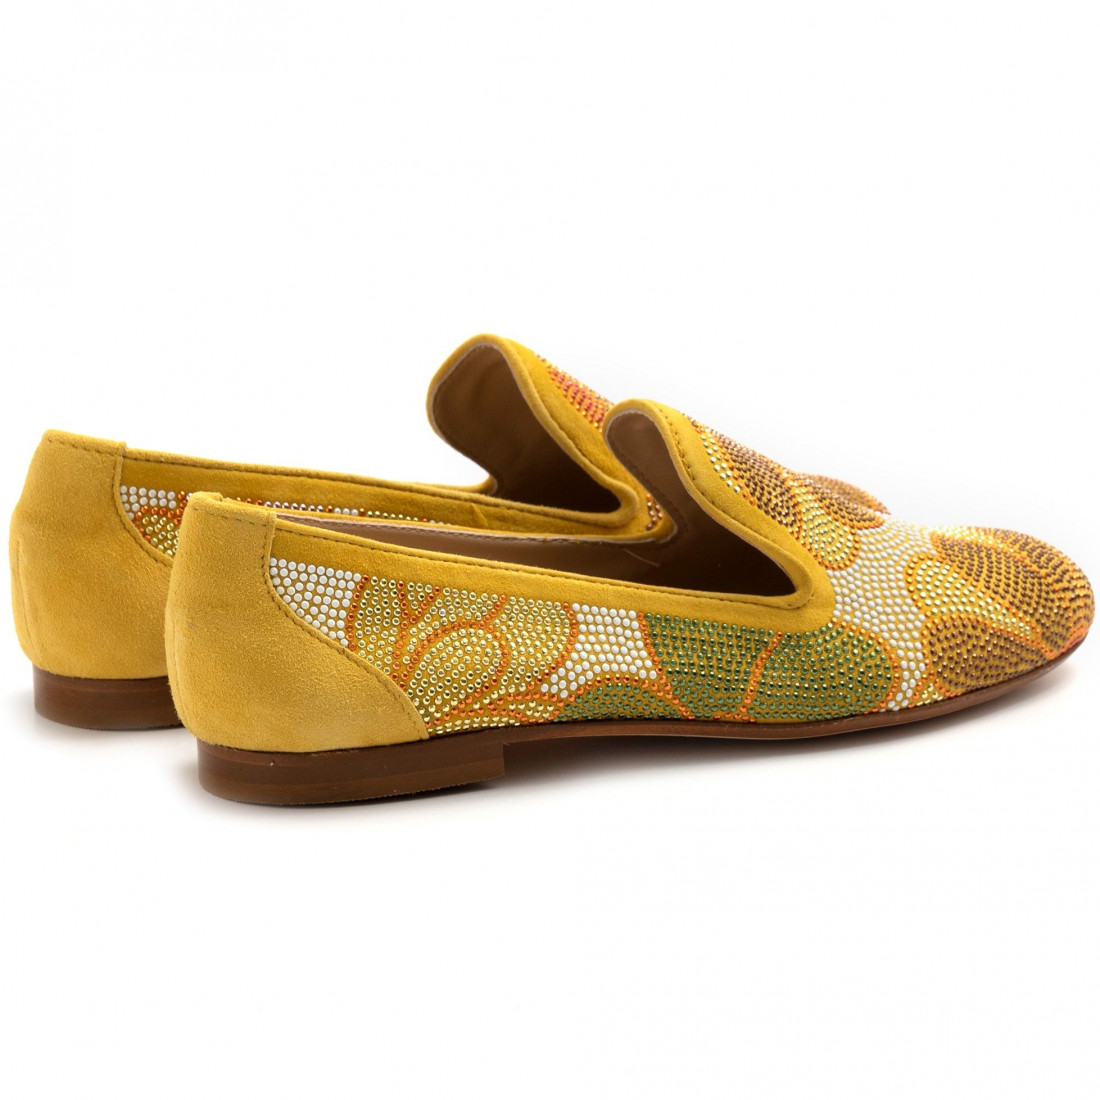 Zapato Belle Vie modelo Via Danesi amarillo con pedrería de colores